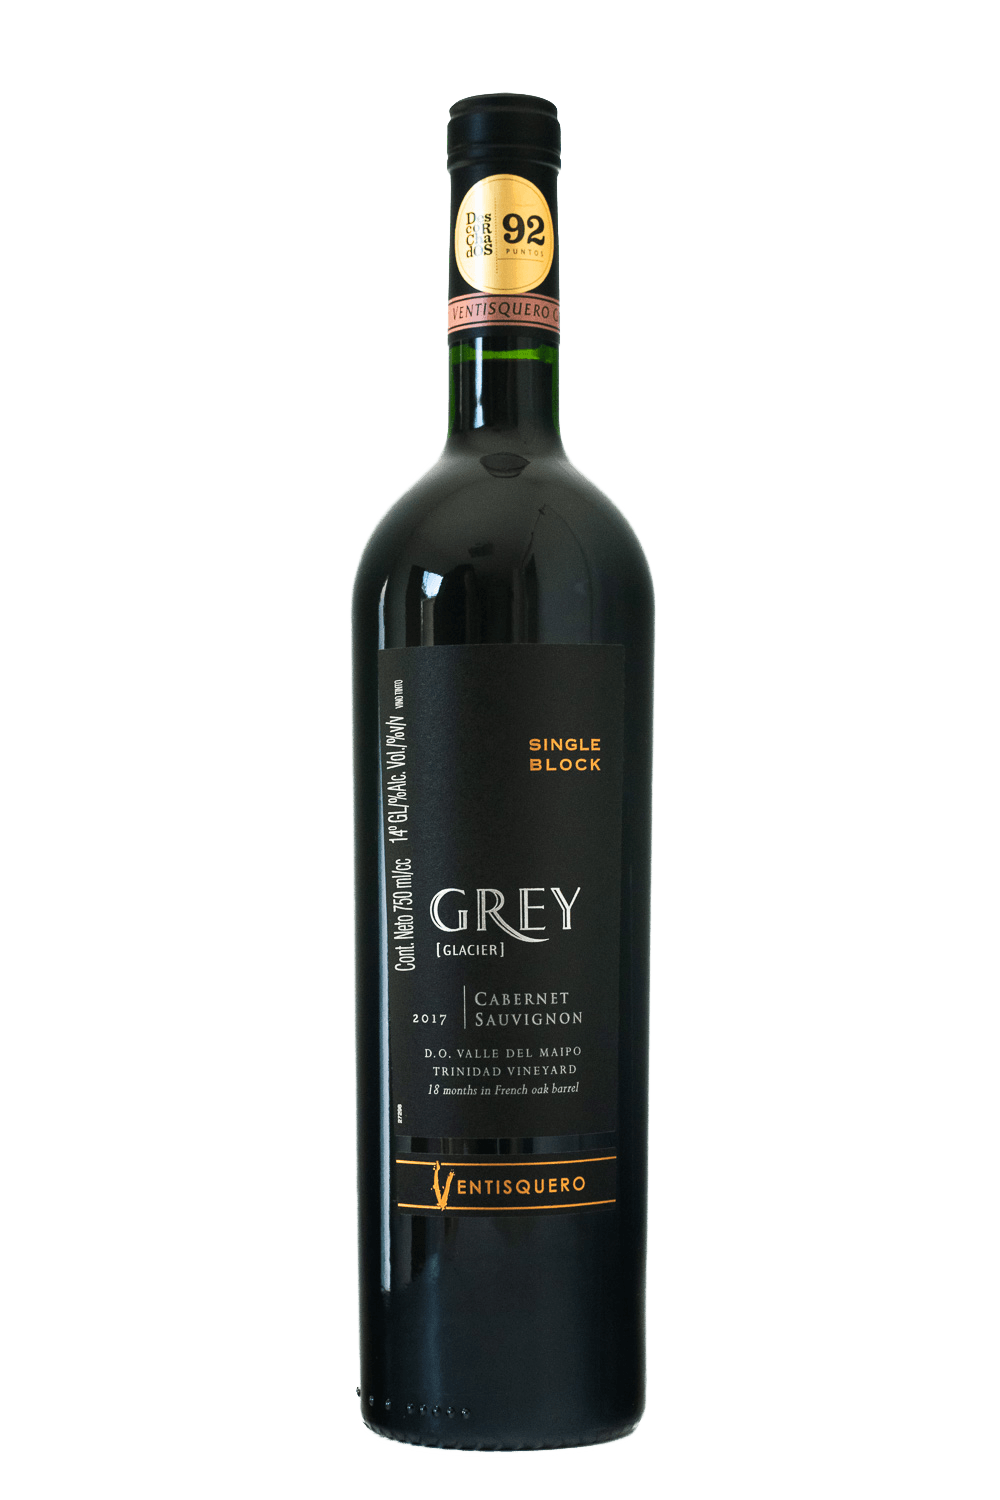 Ventisquero Grey - Cabernet Sauvignon 2017 - The Blend Wines